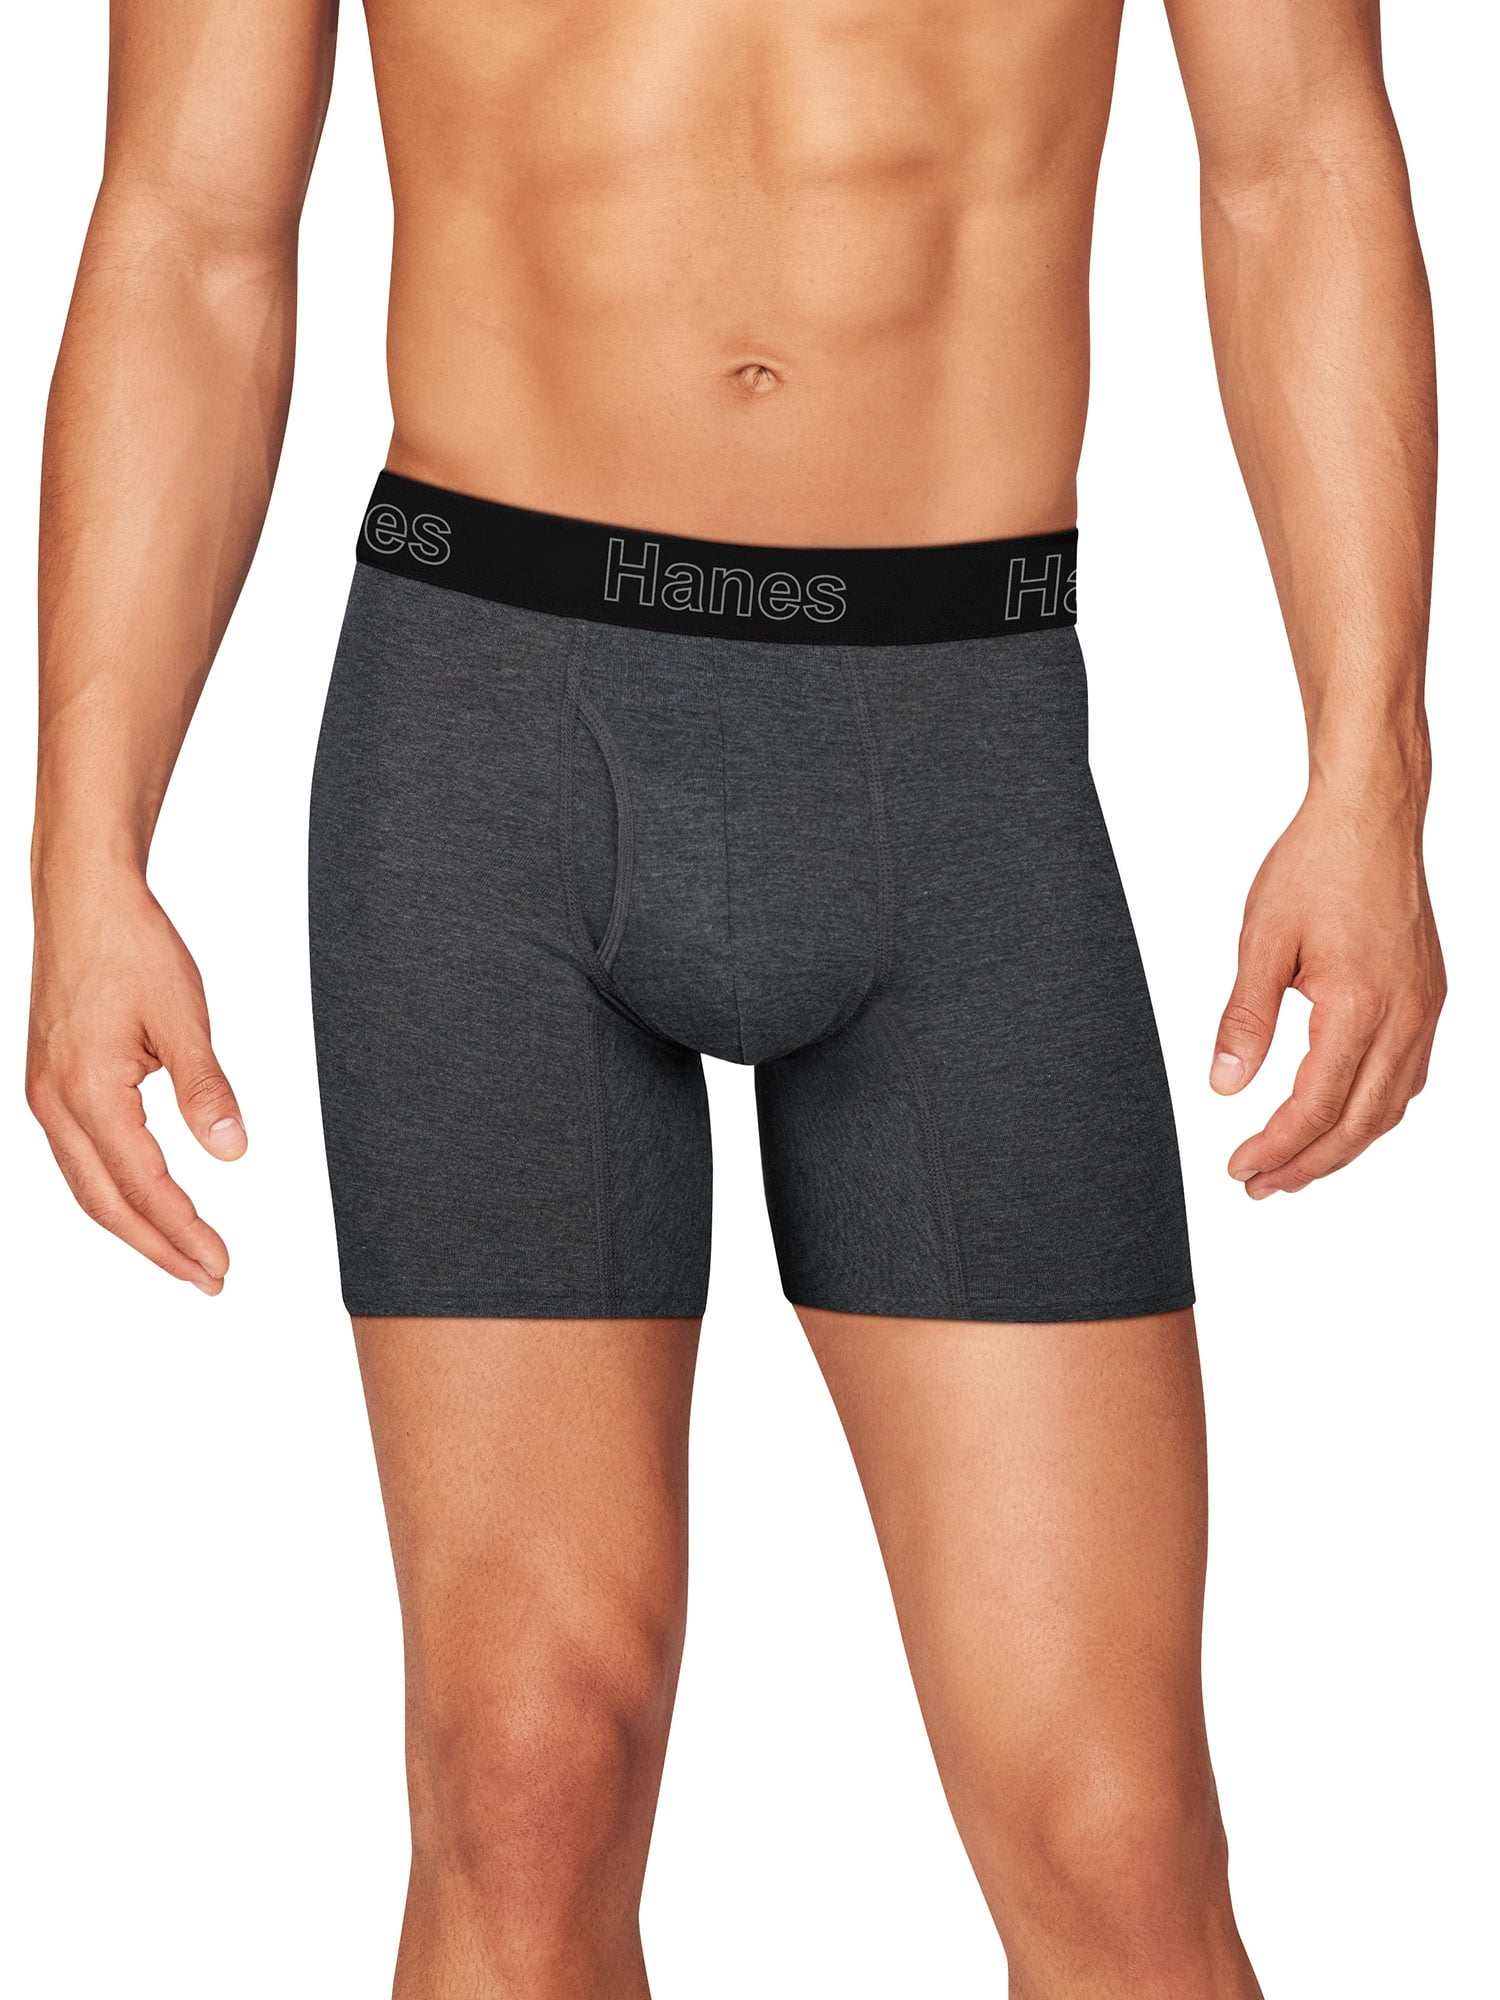 Hanes Men's Comfort Flex Fit Total Support Pouch Boxer Briefs, 3 Pack 